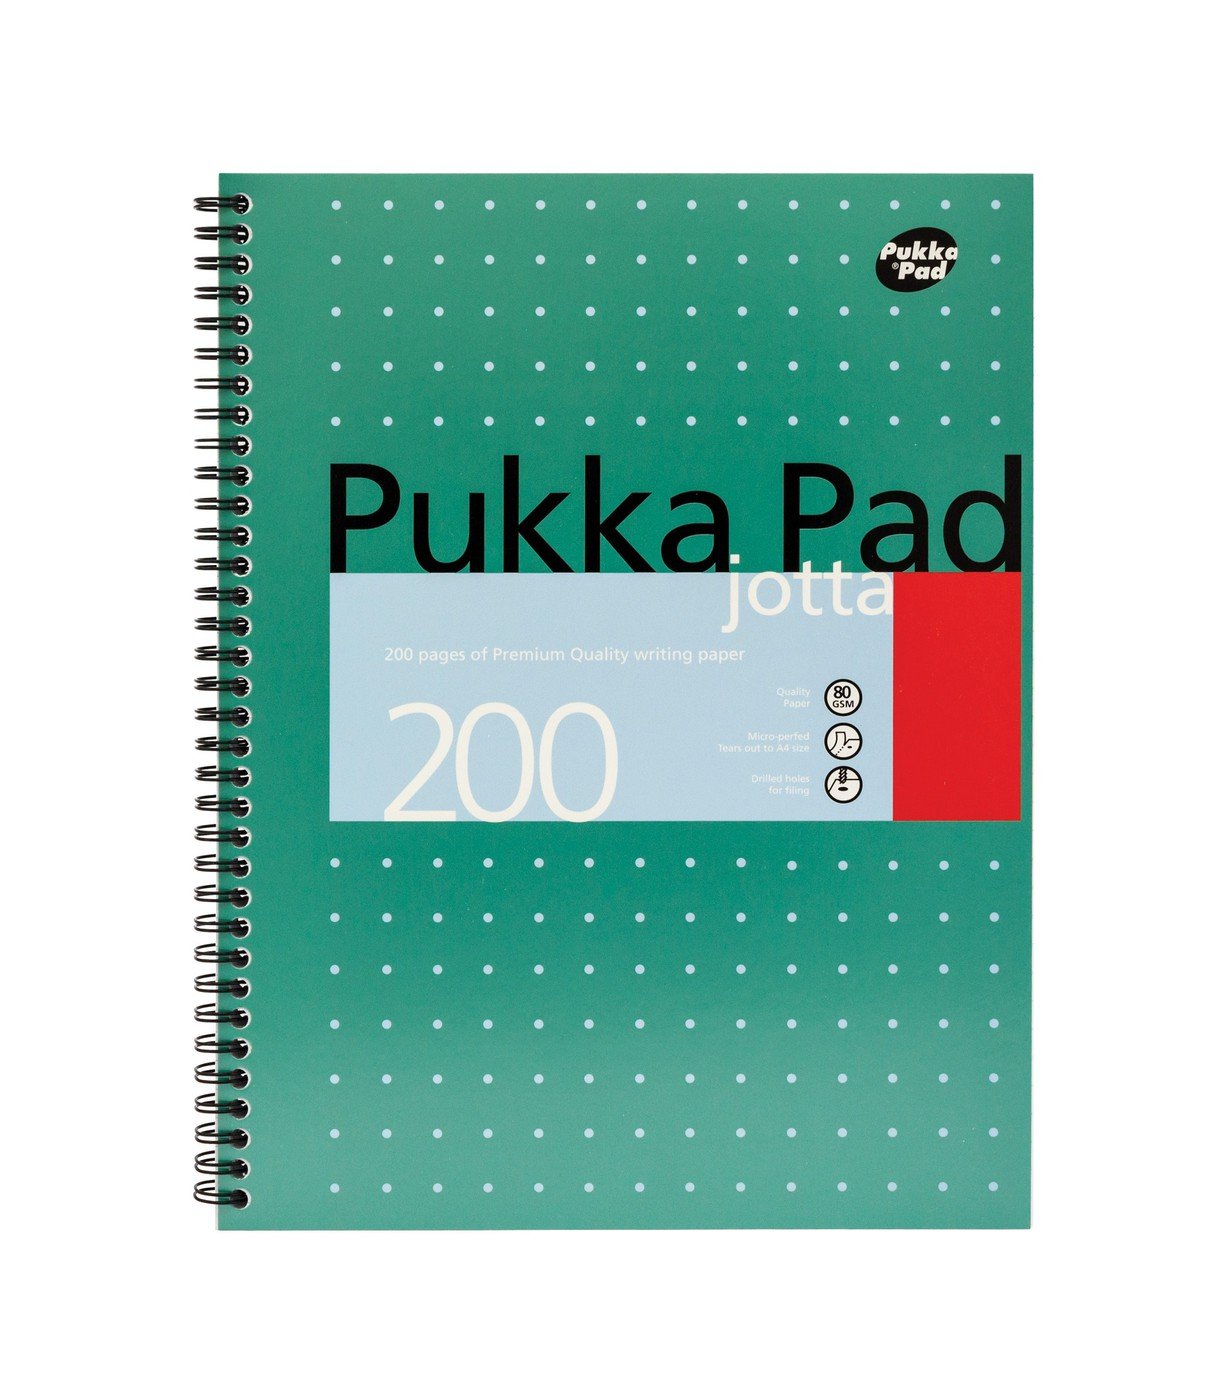 Pukka Pads A4 Metallic Jotta Notepad - Pack of 3